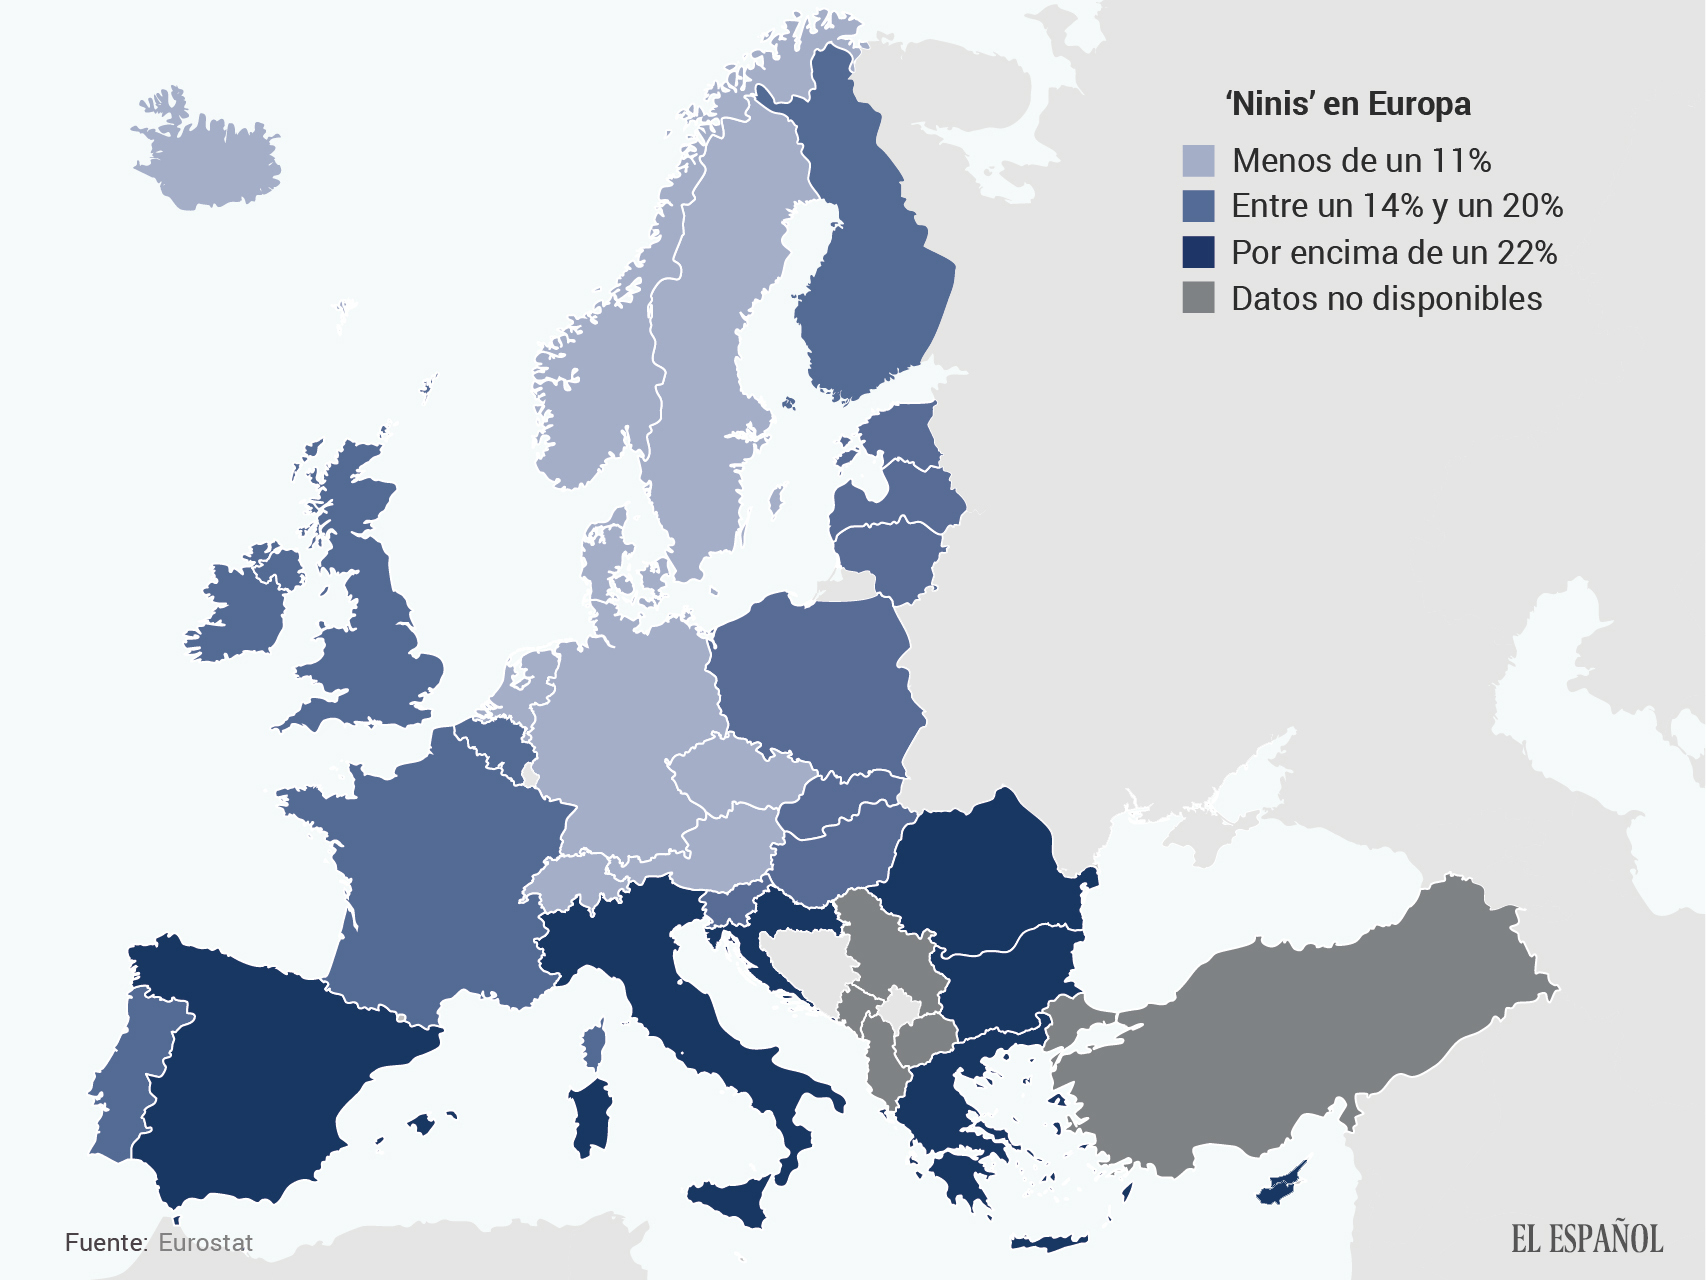 Así se distribuyen los veinteañeros que ni estudian ni trabajan en Europa